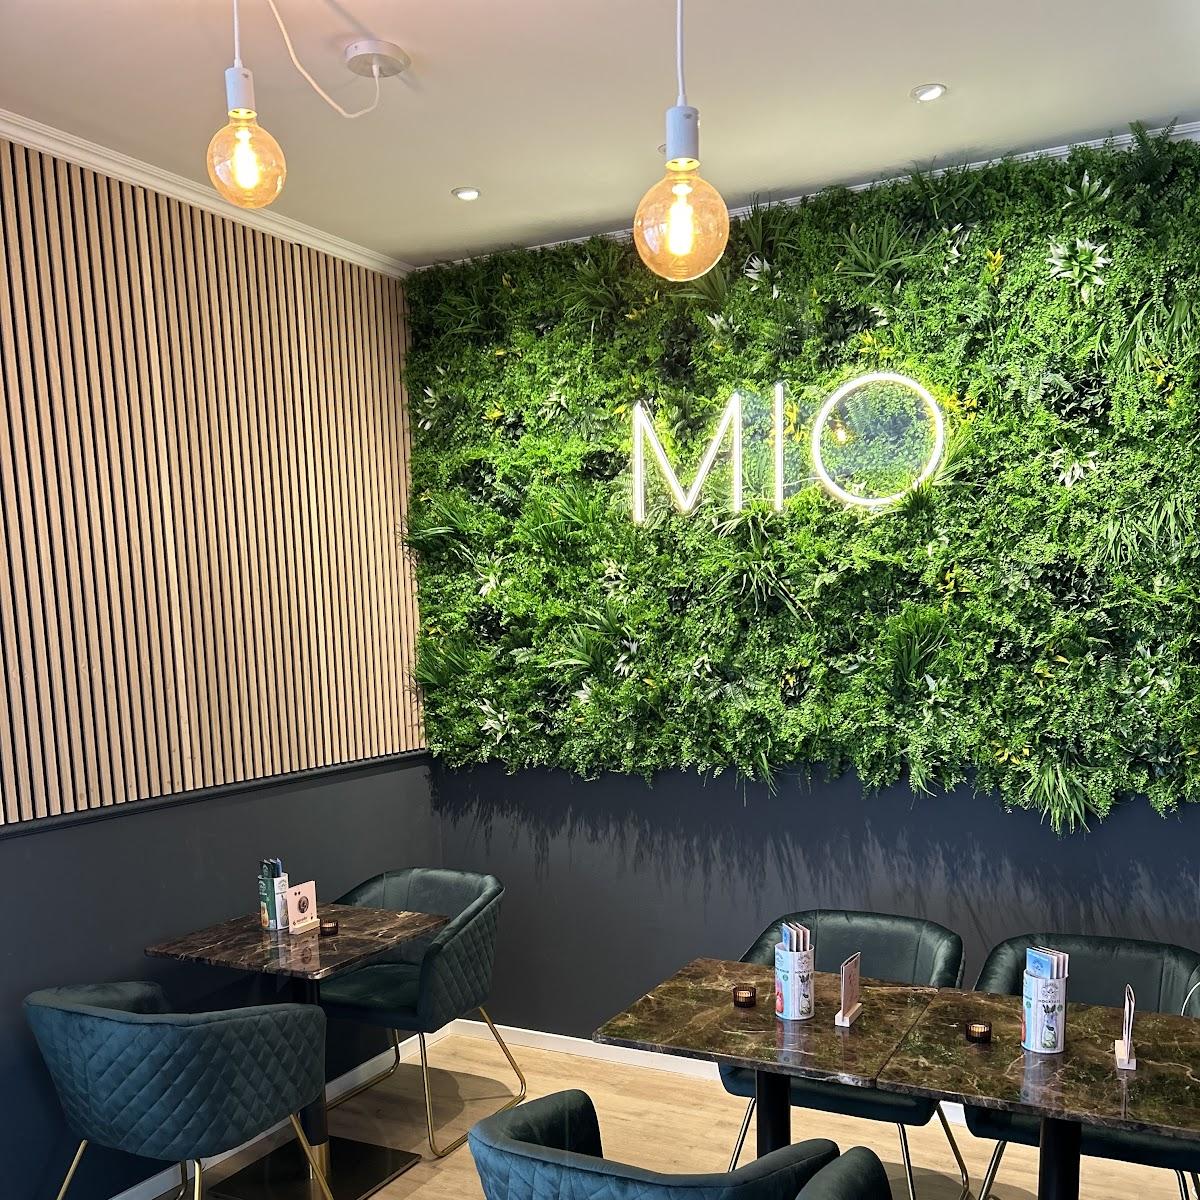 Restaurant "MIO Café & Bar" in Ostfildern